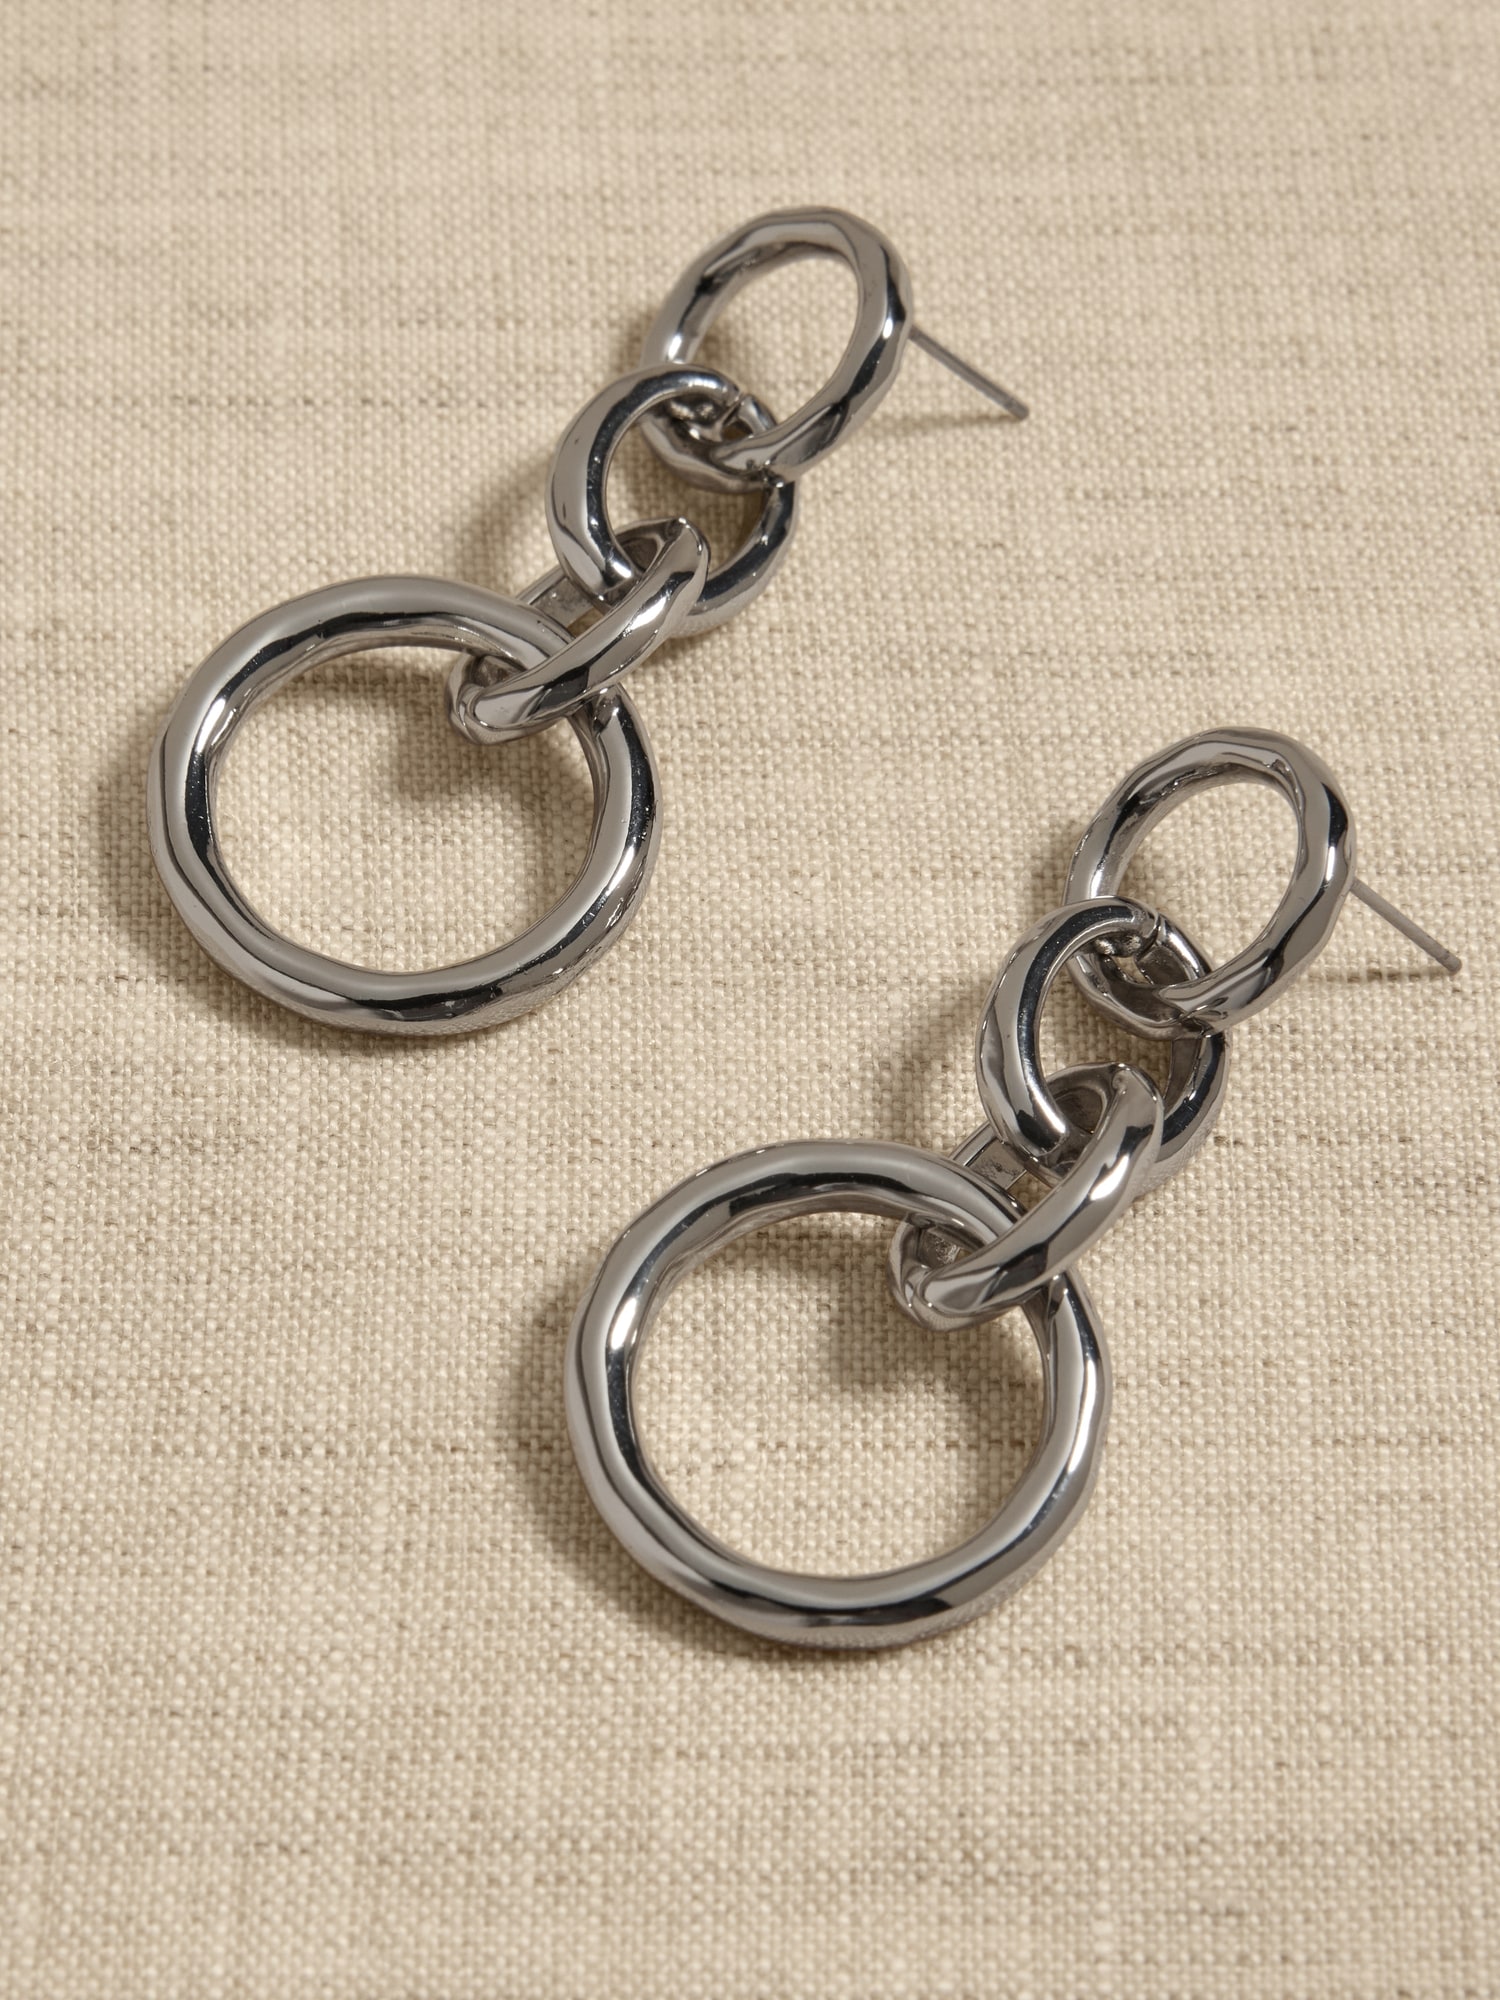 Chain Earrings